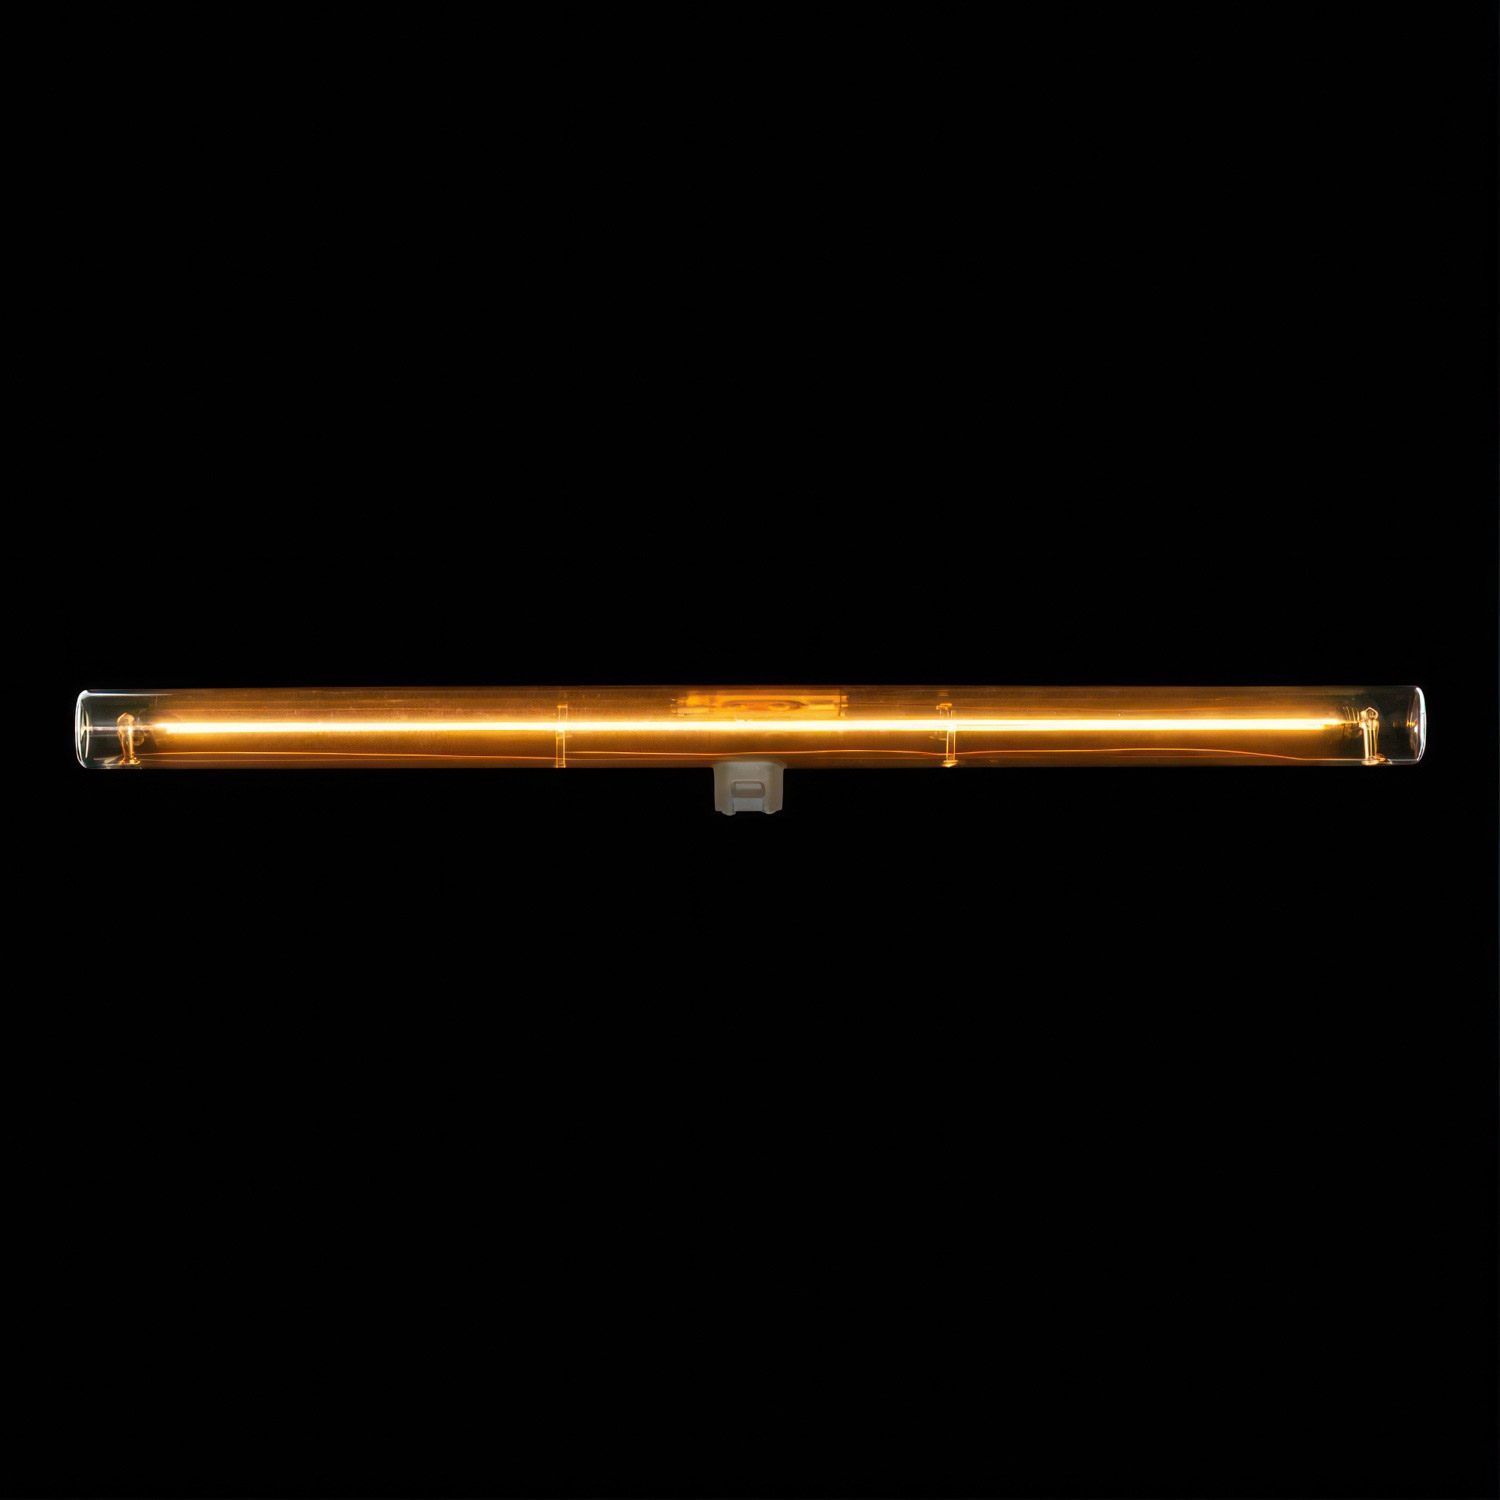 LED Linear Golden S14d Light Bulb - length 500 mm 8W 430Lm 1900K Dimmable